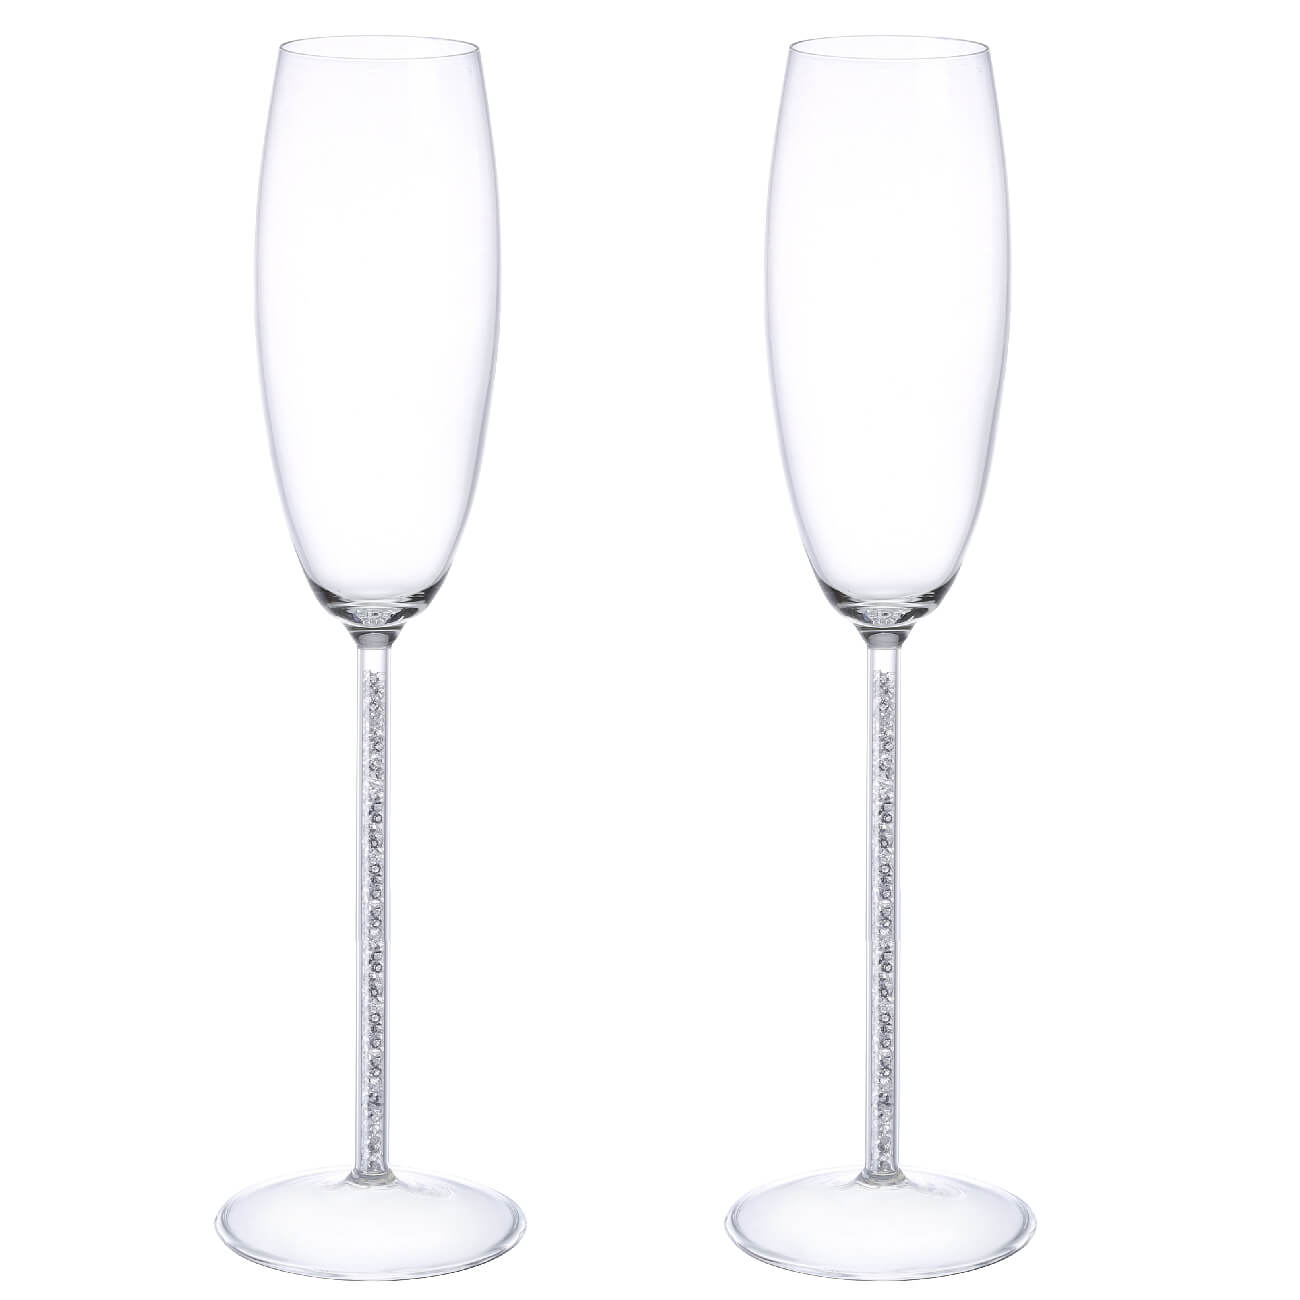 Бокал для шампанского, 180 мл, 2 шт, стекло/стразы, Crystal decor бокал стеклянный для шампанского magistro золотой лист 170 мл 5×24 см